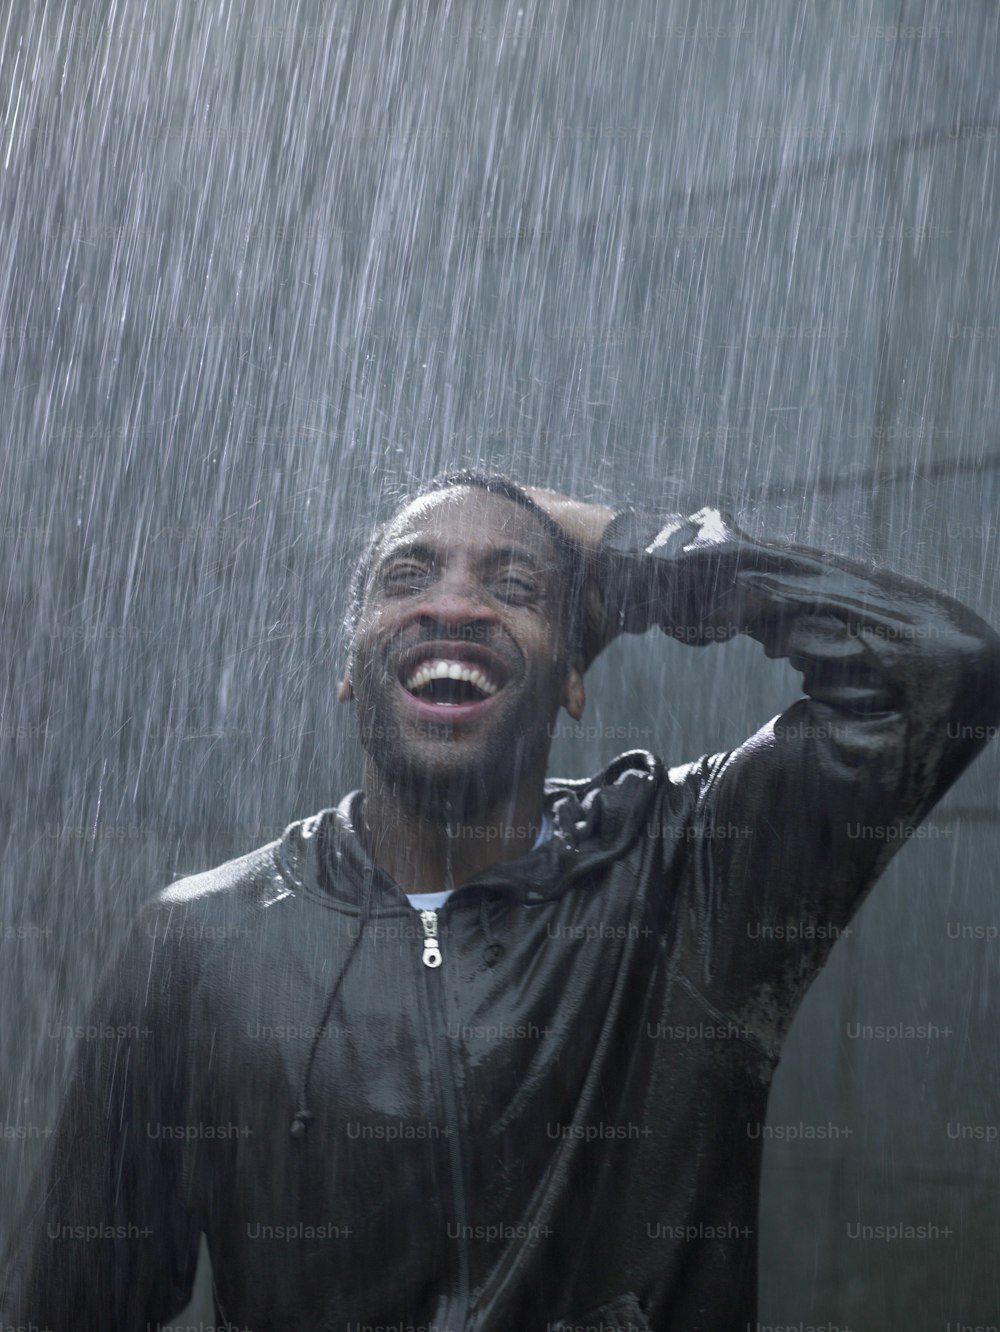 Un uomo sta ridendo mentre sta in piedi sotto la pioggia